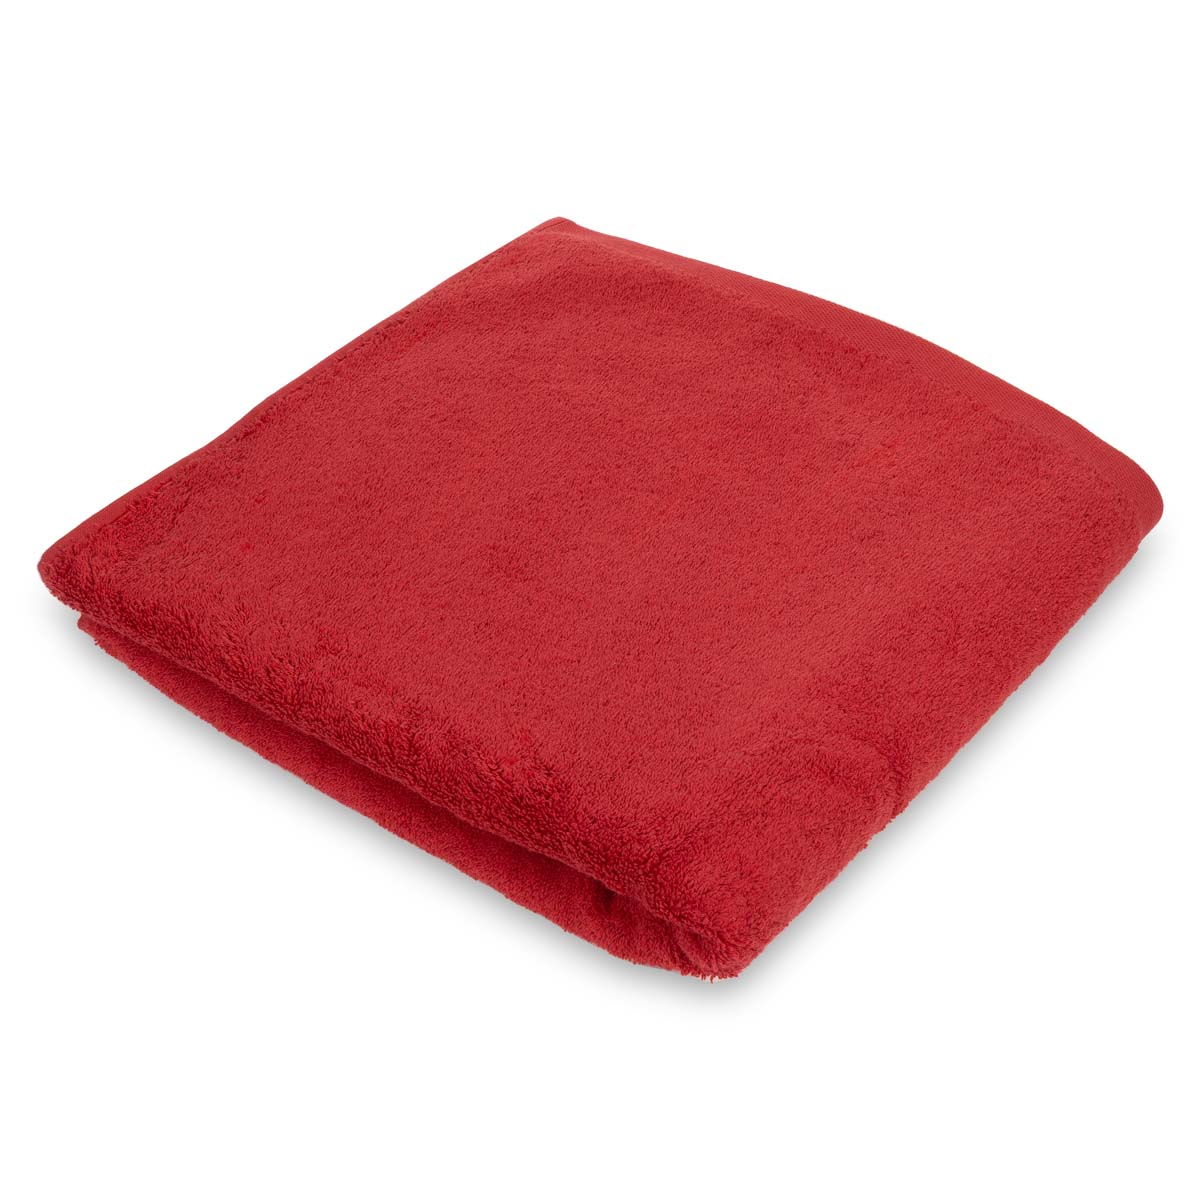 Полотенце махровое Lameirinho Aqua 70x140см, цвет красный полотенце север красный махра